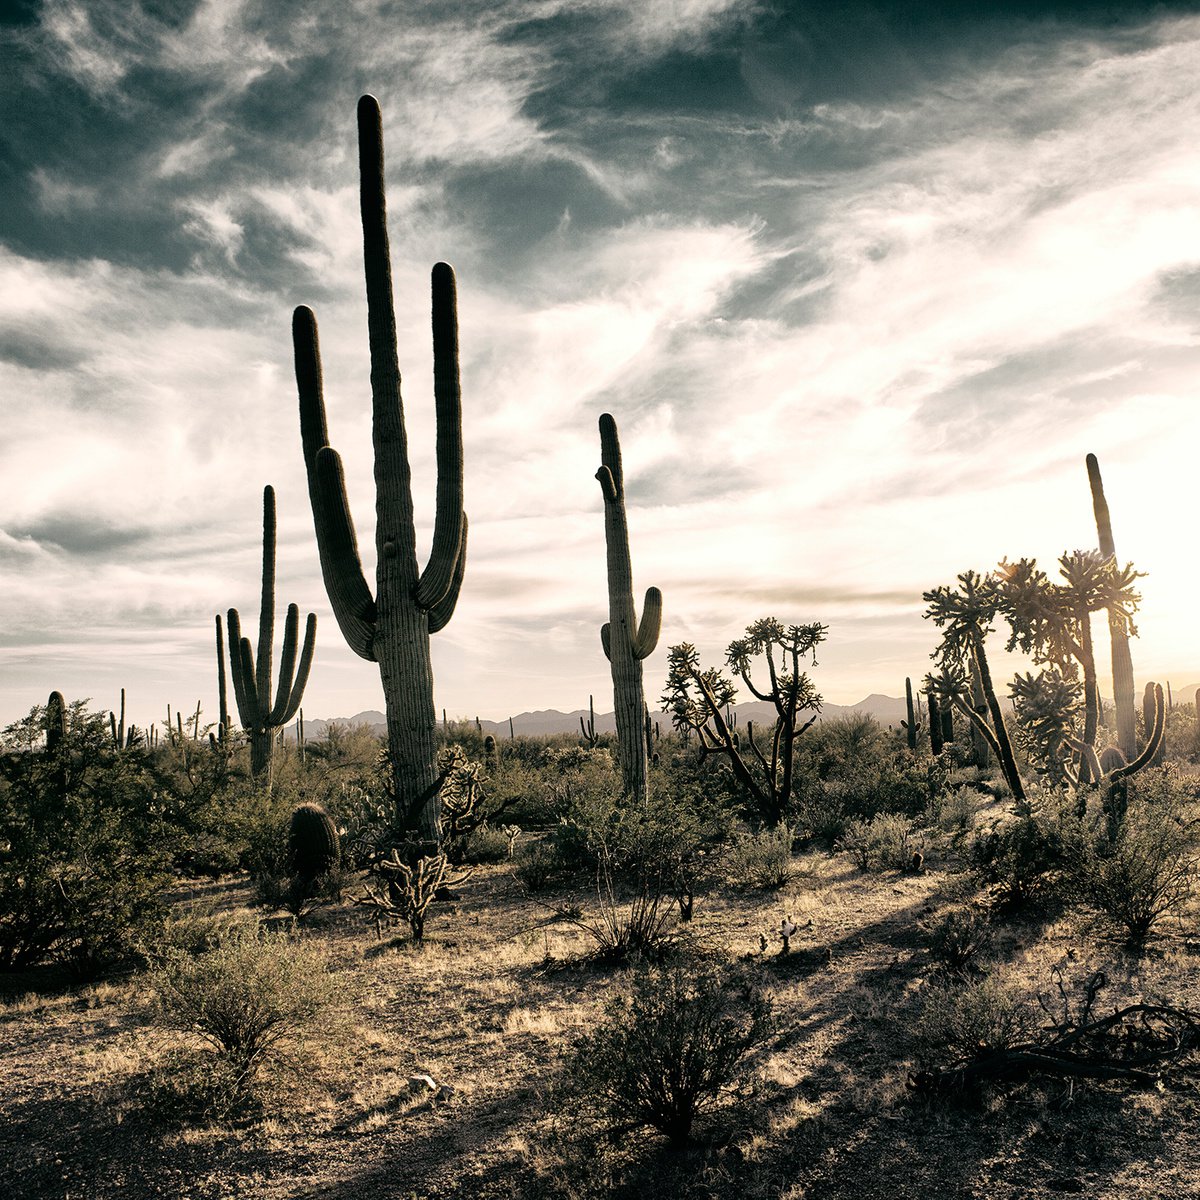 Saguaro Cactus, Sonoran Desert by Heike Bohnstengel